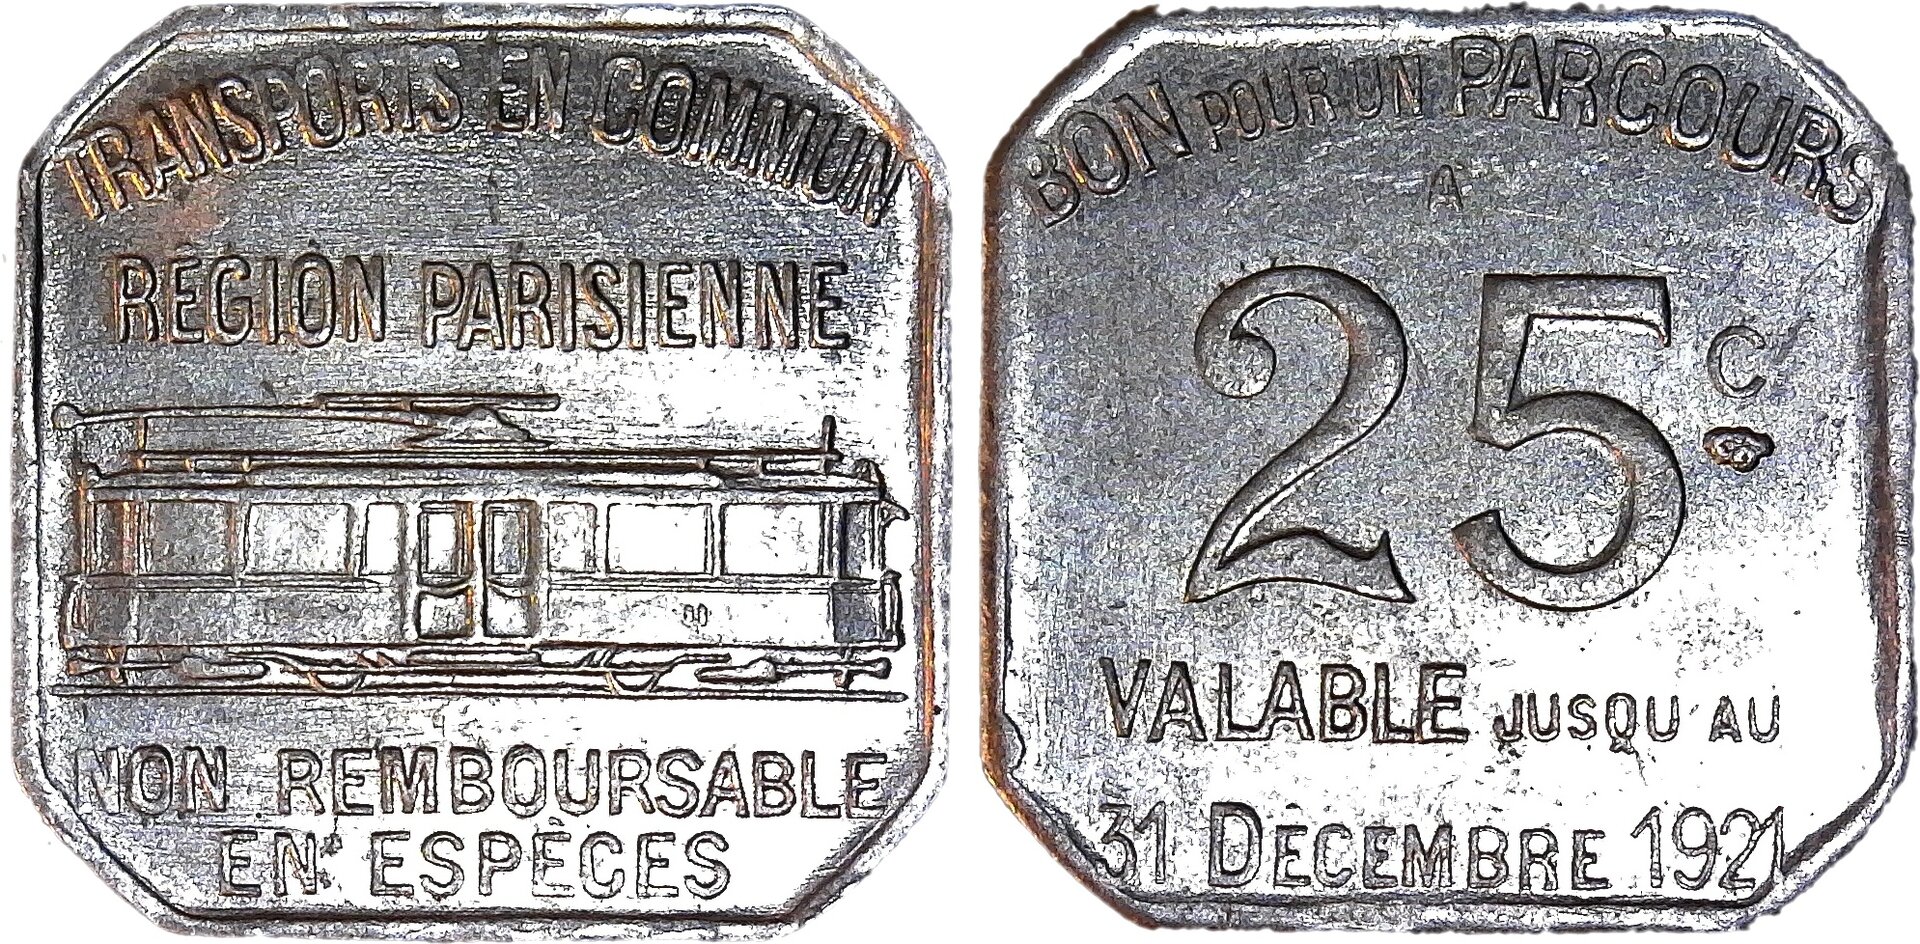 Paris transit token 1921 reverse-side-cutout.jpg